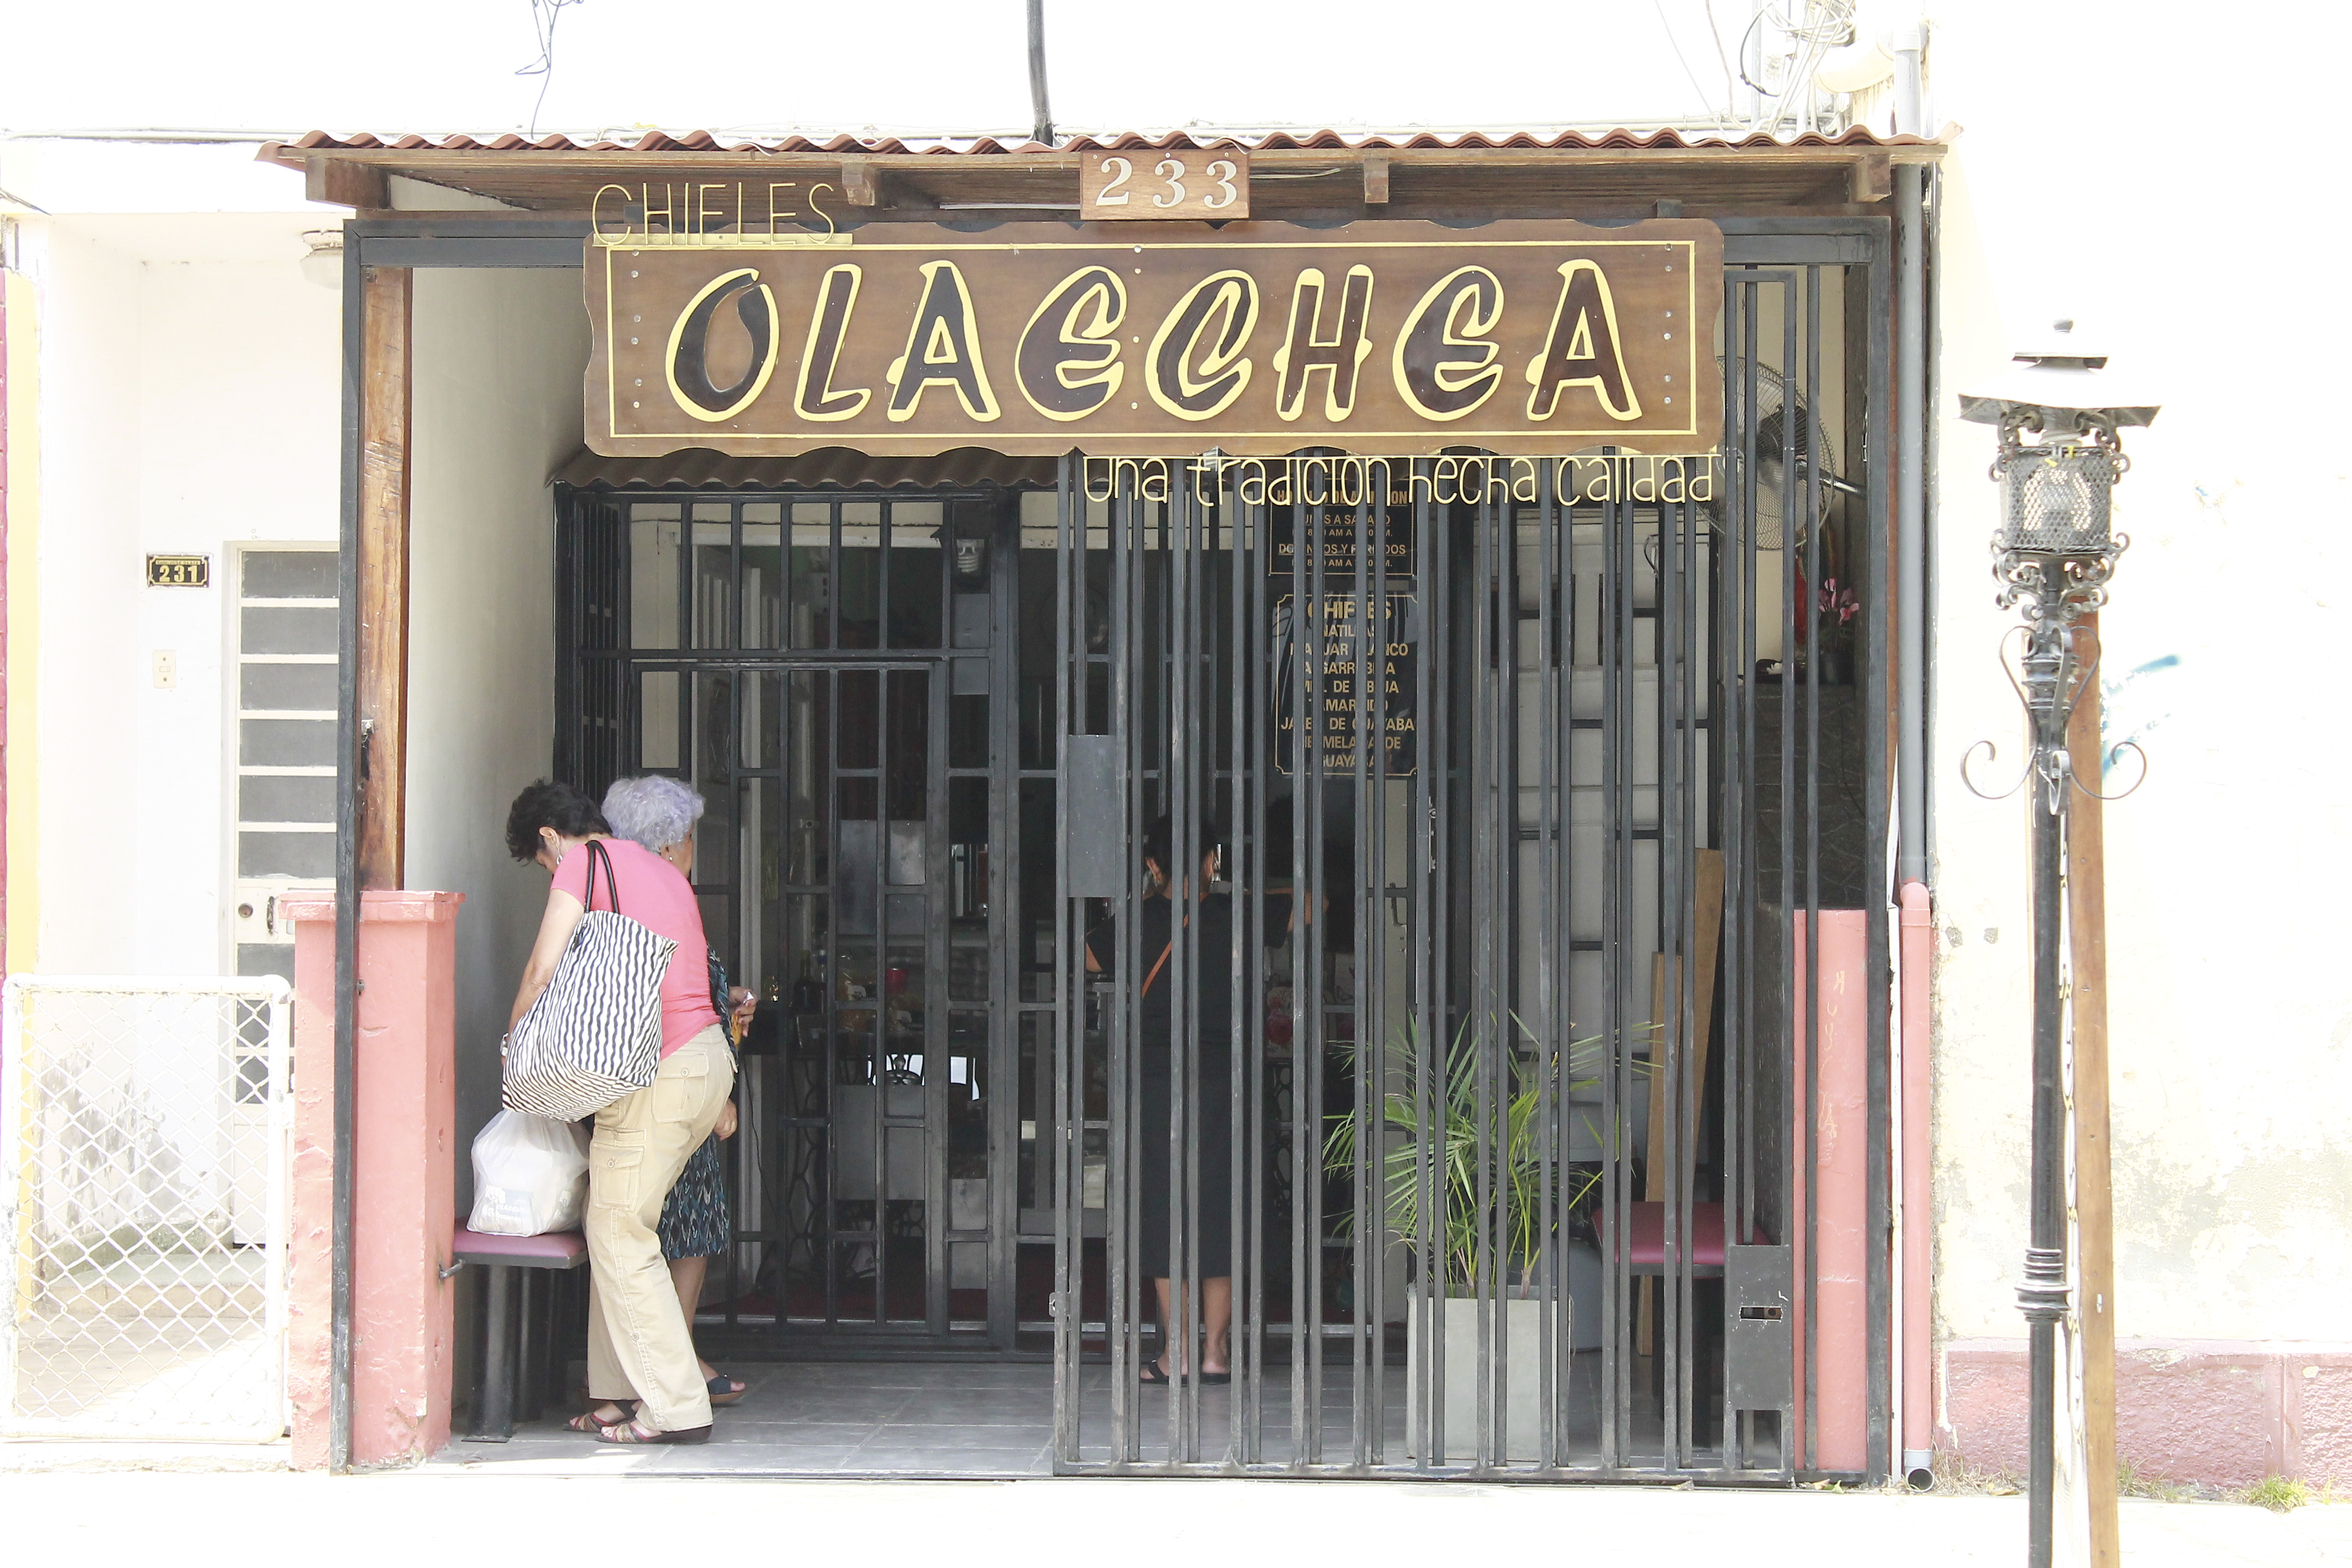 Tienda de chifles 'Olaechea', ubicada en la calle José Olaya 231. Castilla-Piura